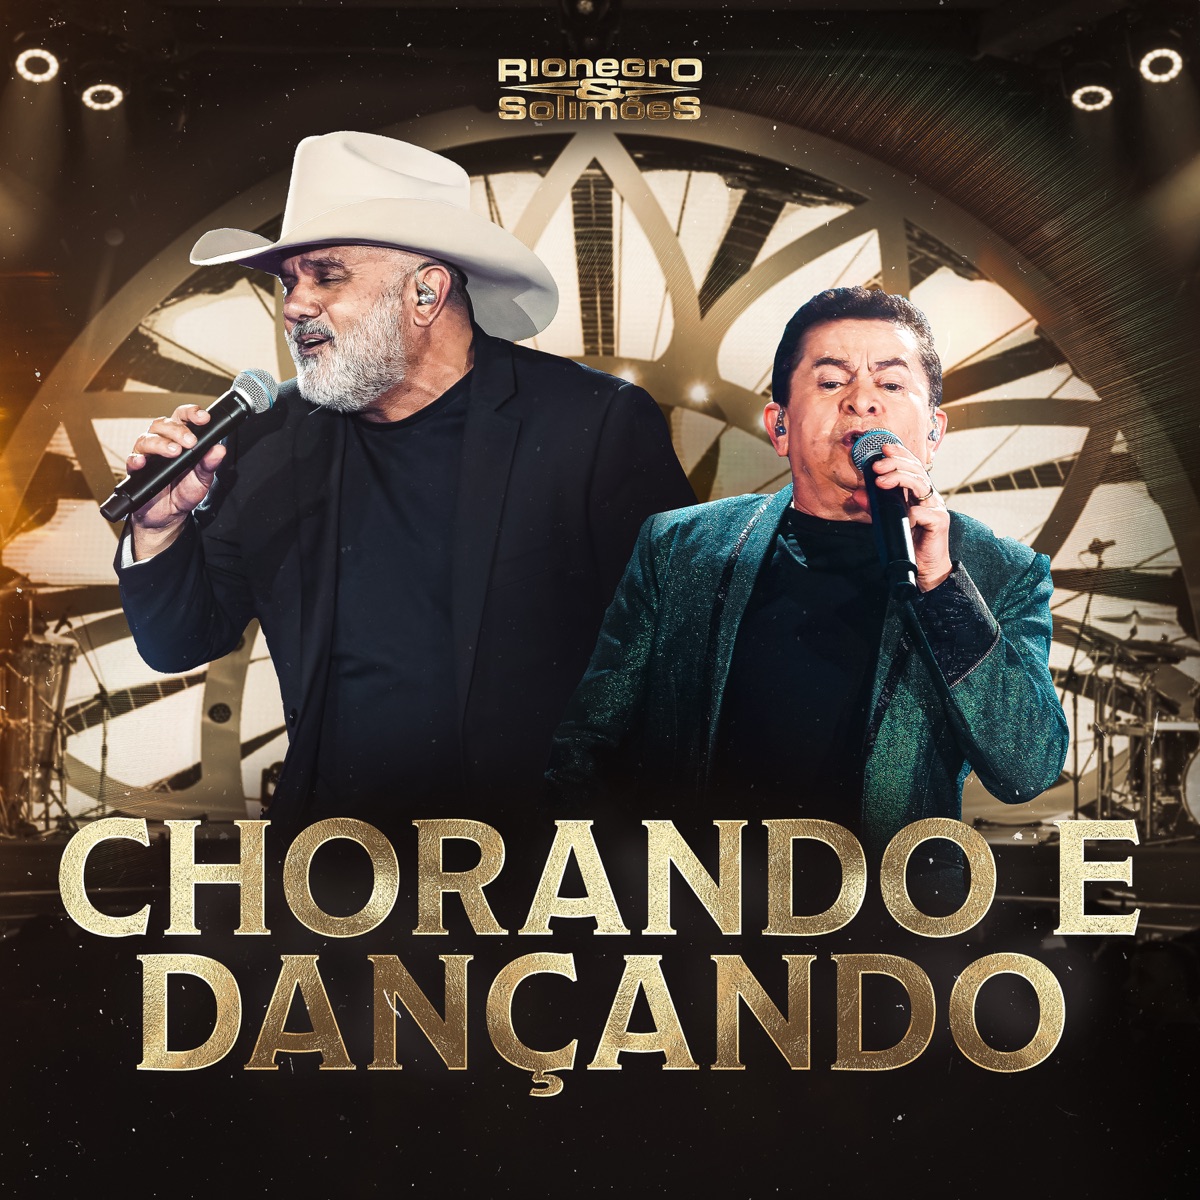 Peão Apaixonado — álbum de Rionegro & Solimões — Apple Music